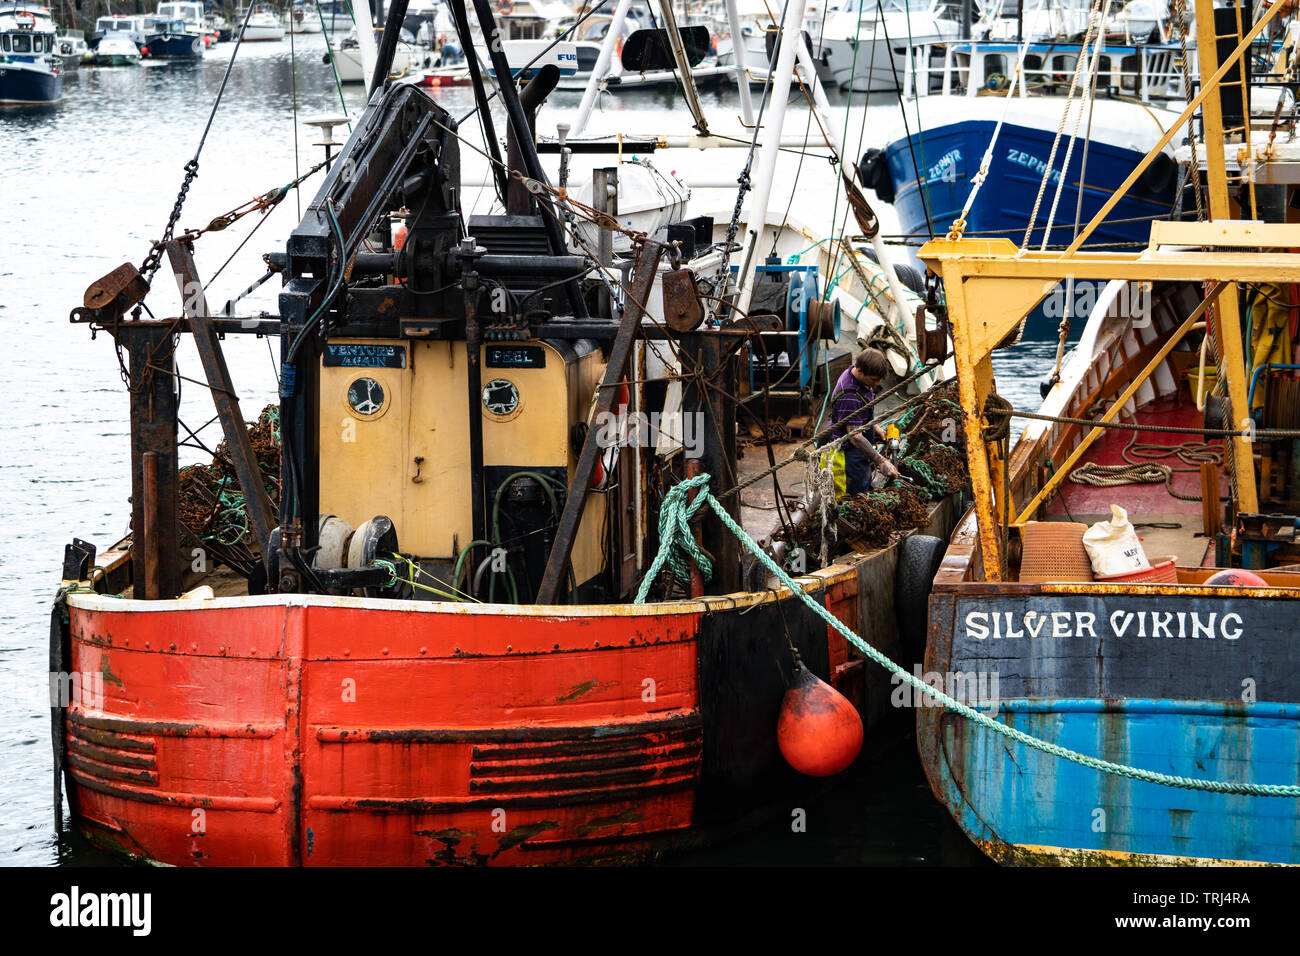 Fishing boats, Peel harbour, Peel, Isle of Man, UK Stock Photo